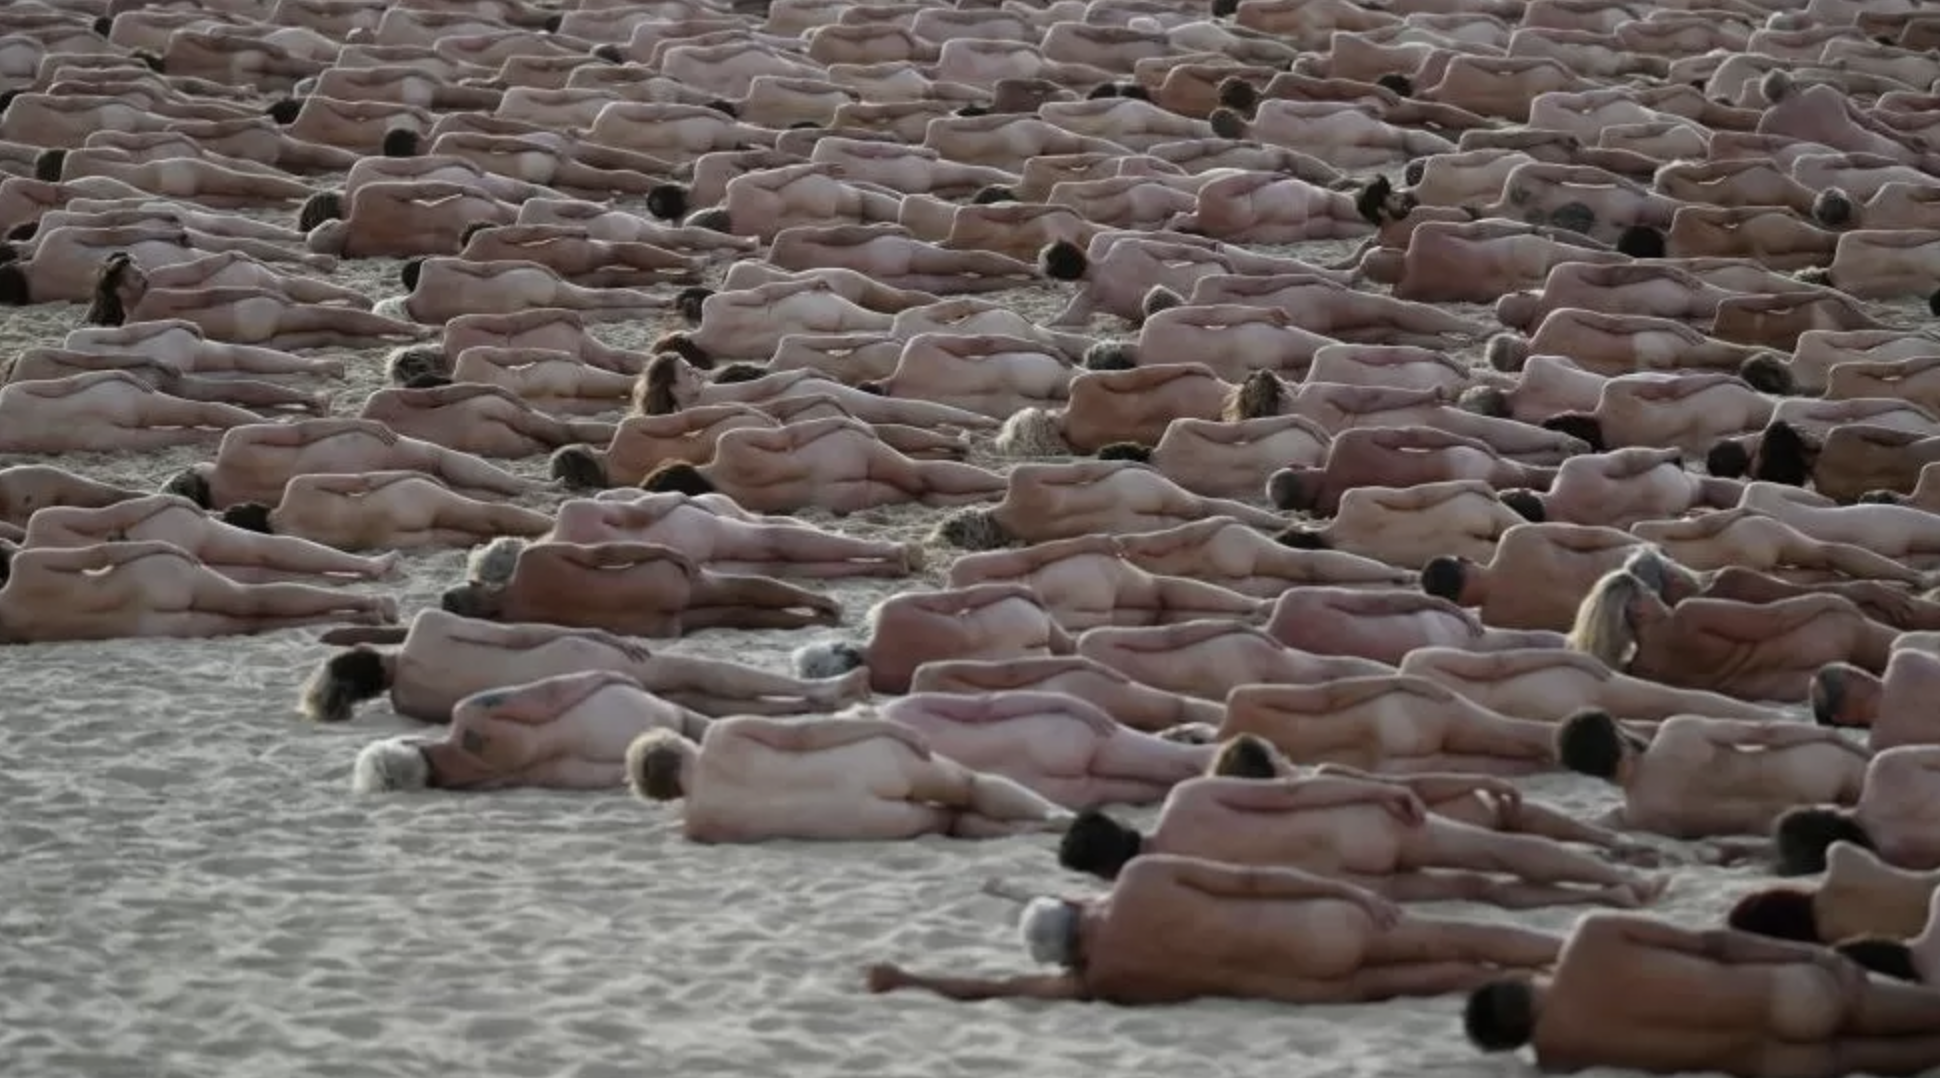 где есть пляжи с голыми людьми фото 24